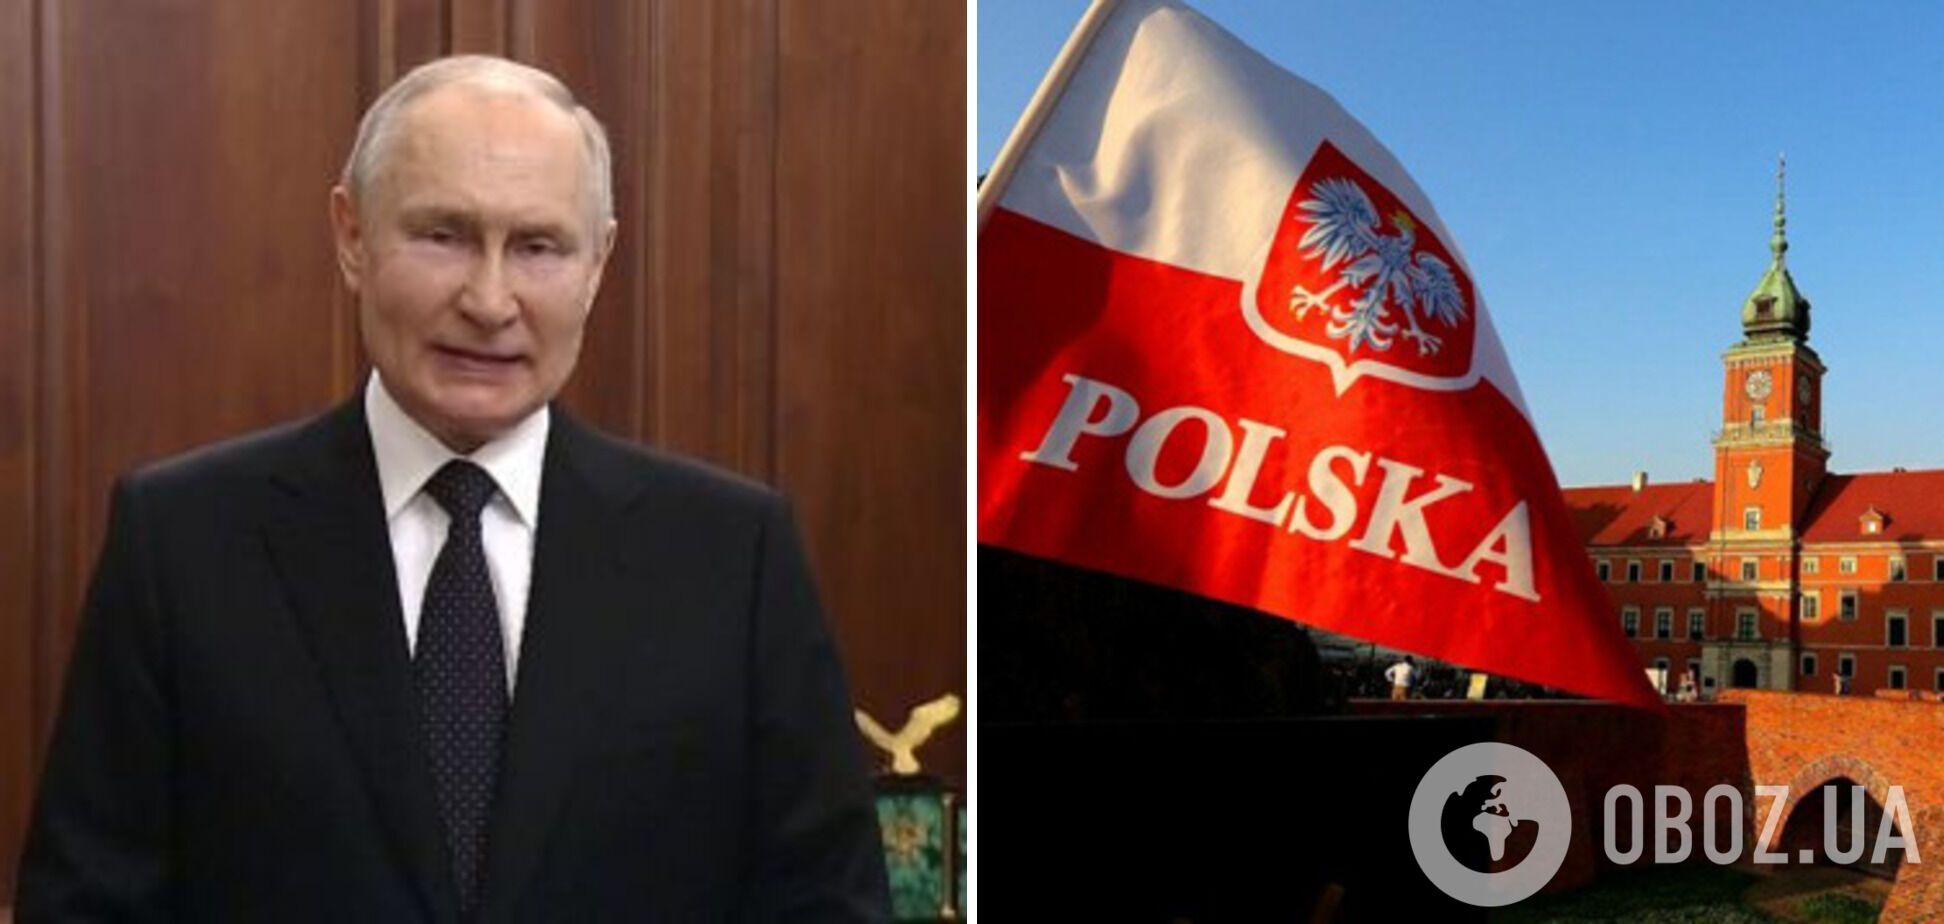 Путин обвинил Польшу в планах отобрать земли у Украины и Беларуси и попытался угрожать